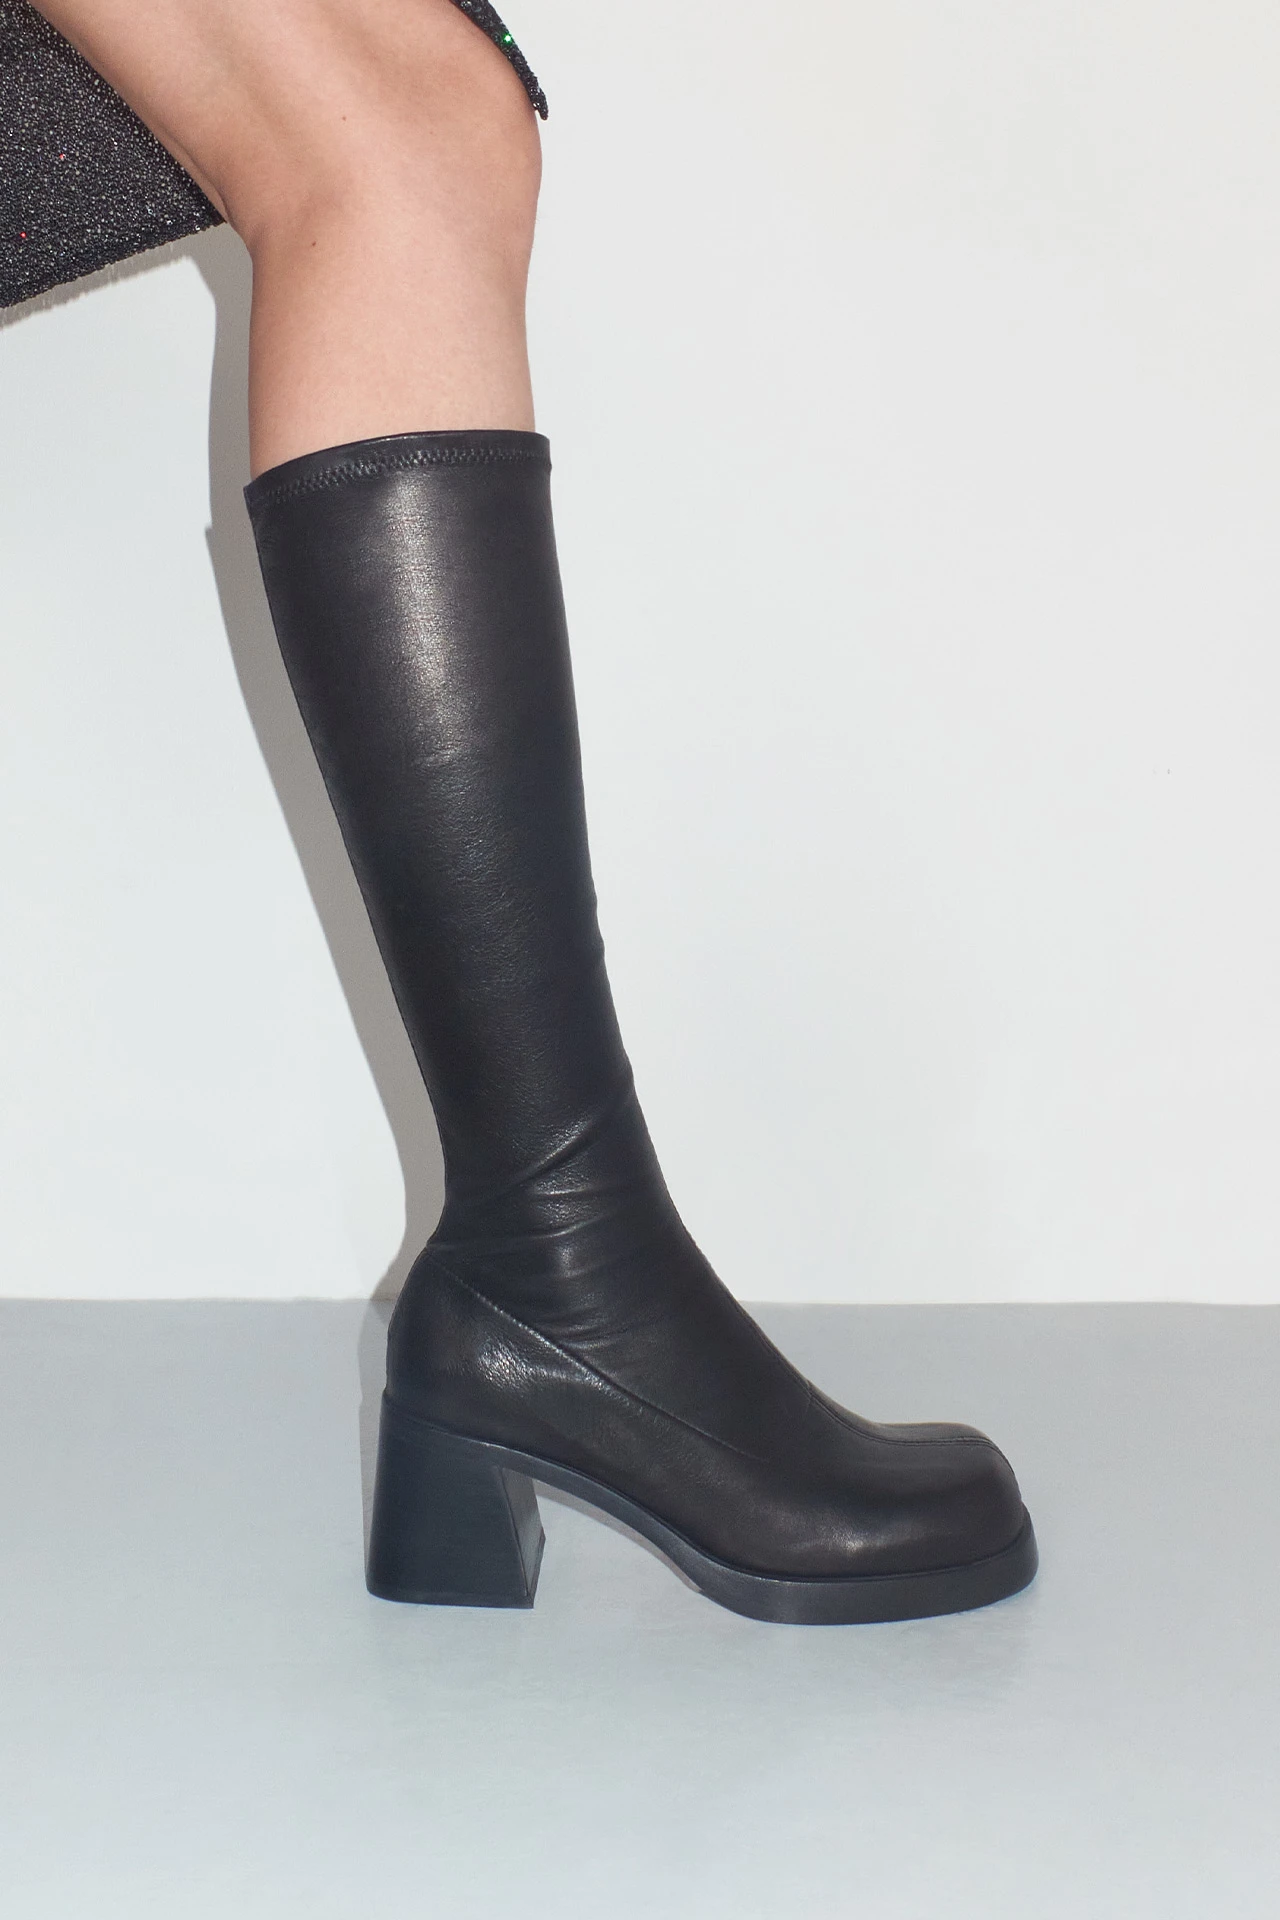 EC-Miista-hedy-black-boots-02